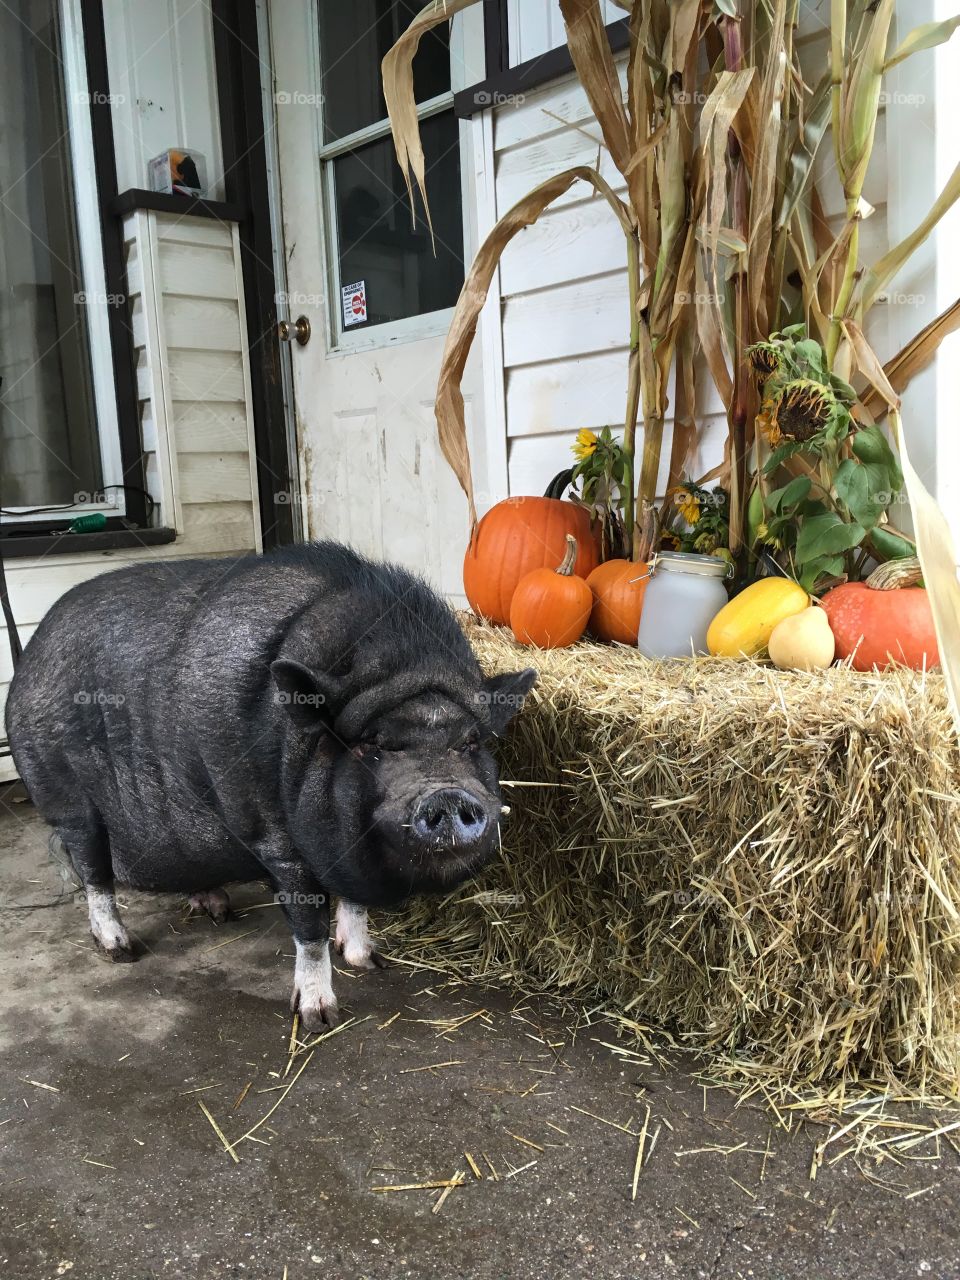 Thanksgiving pig that's not dinner! 